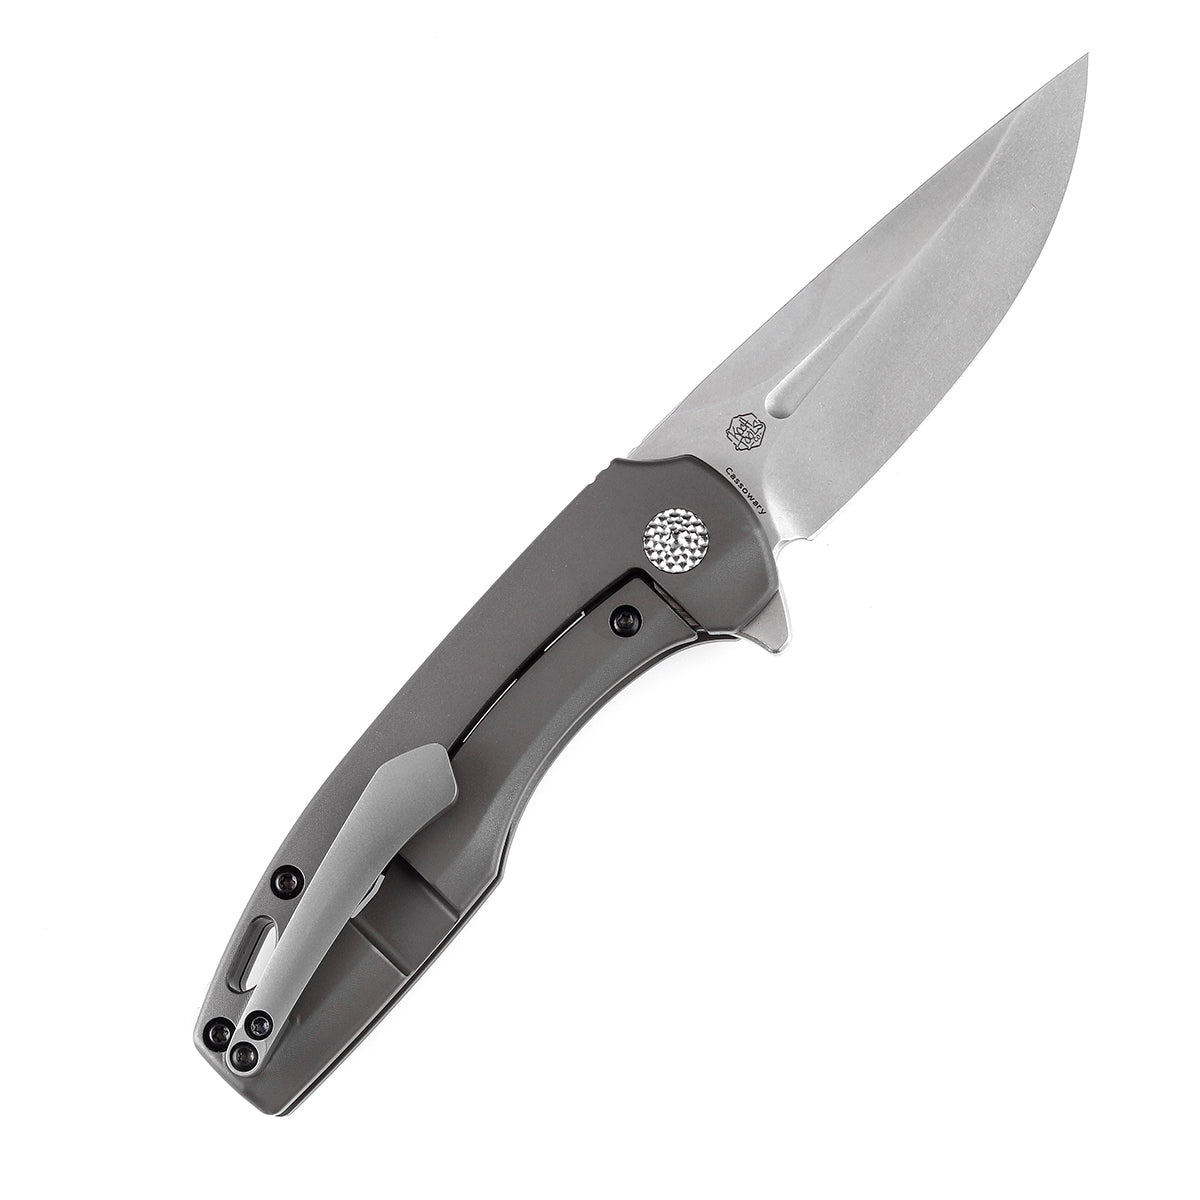 Kansept Cassowary K2065A2 Flipper Knife CPM-S35VN Blade Titanium Handle Edc Knife